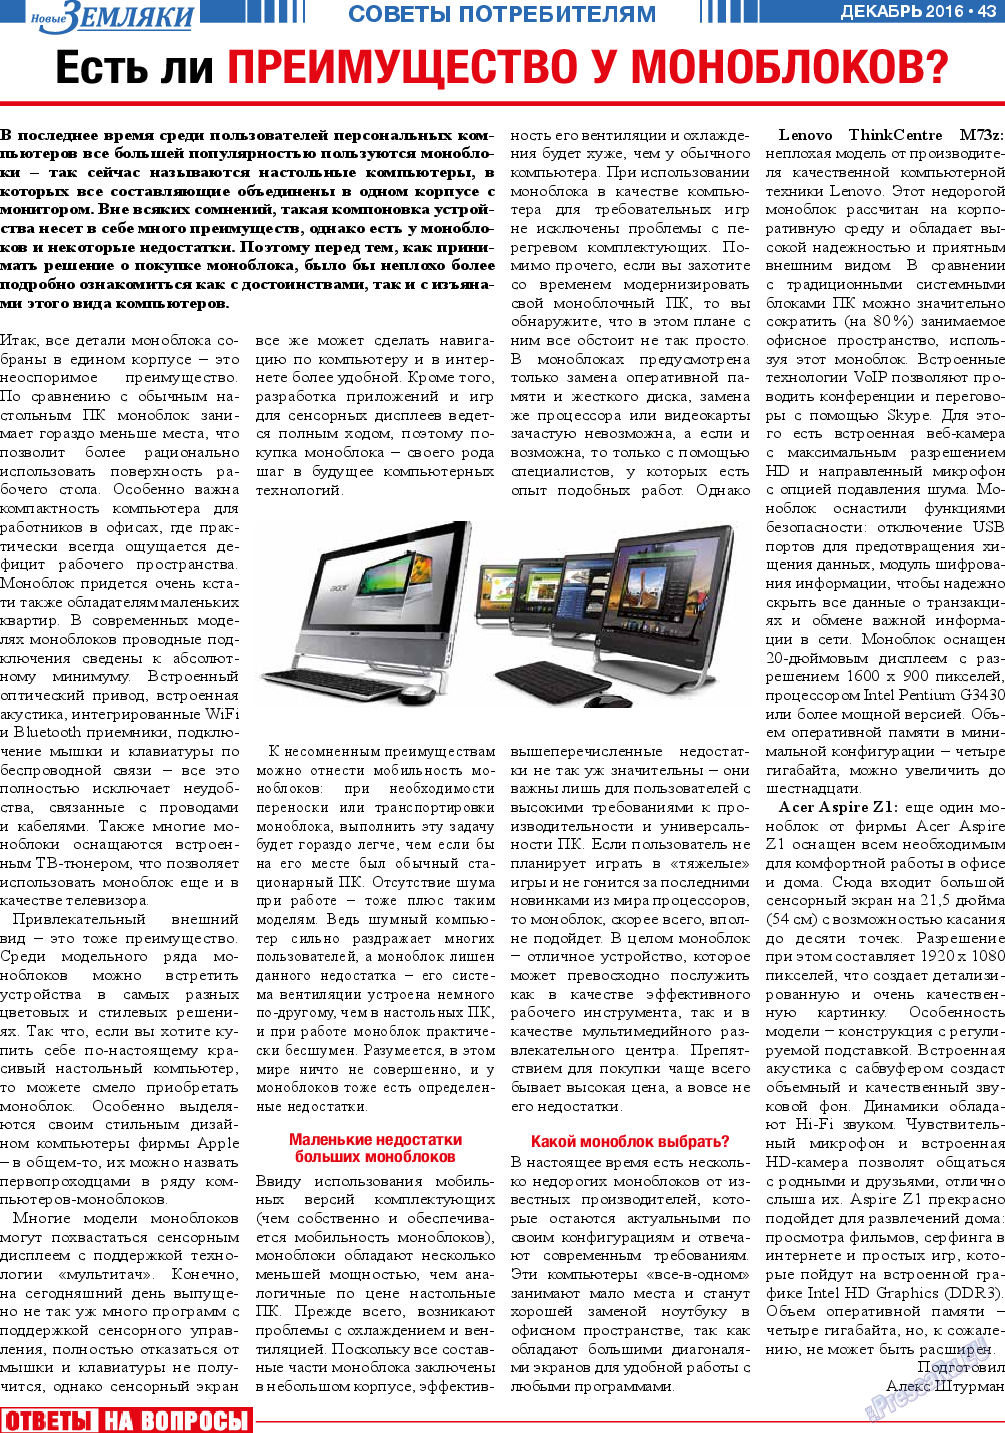 Новые Земляки, газета. 2016 №12 стр.43